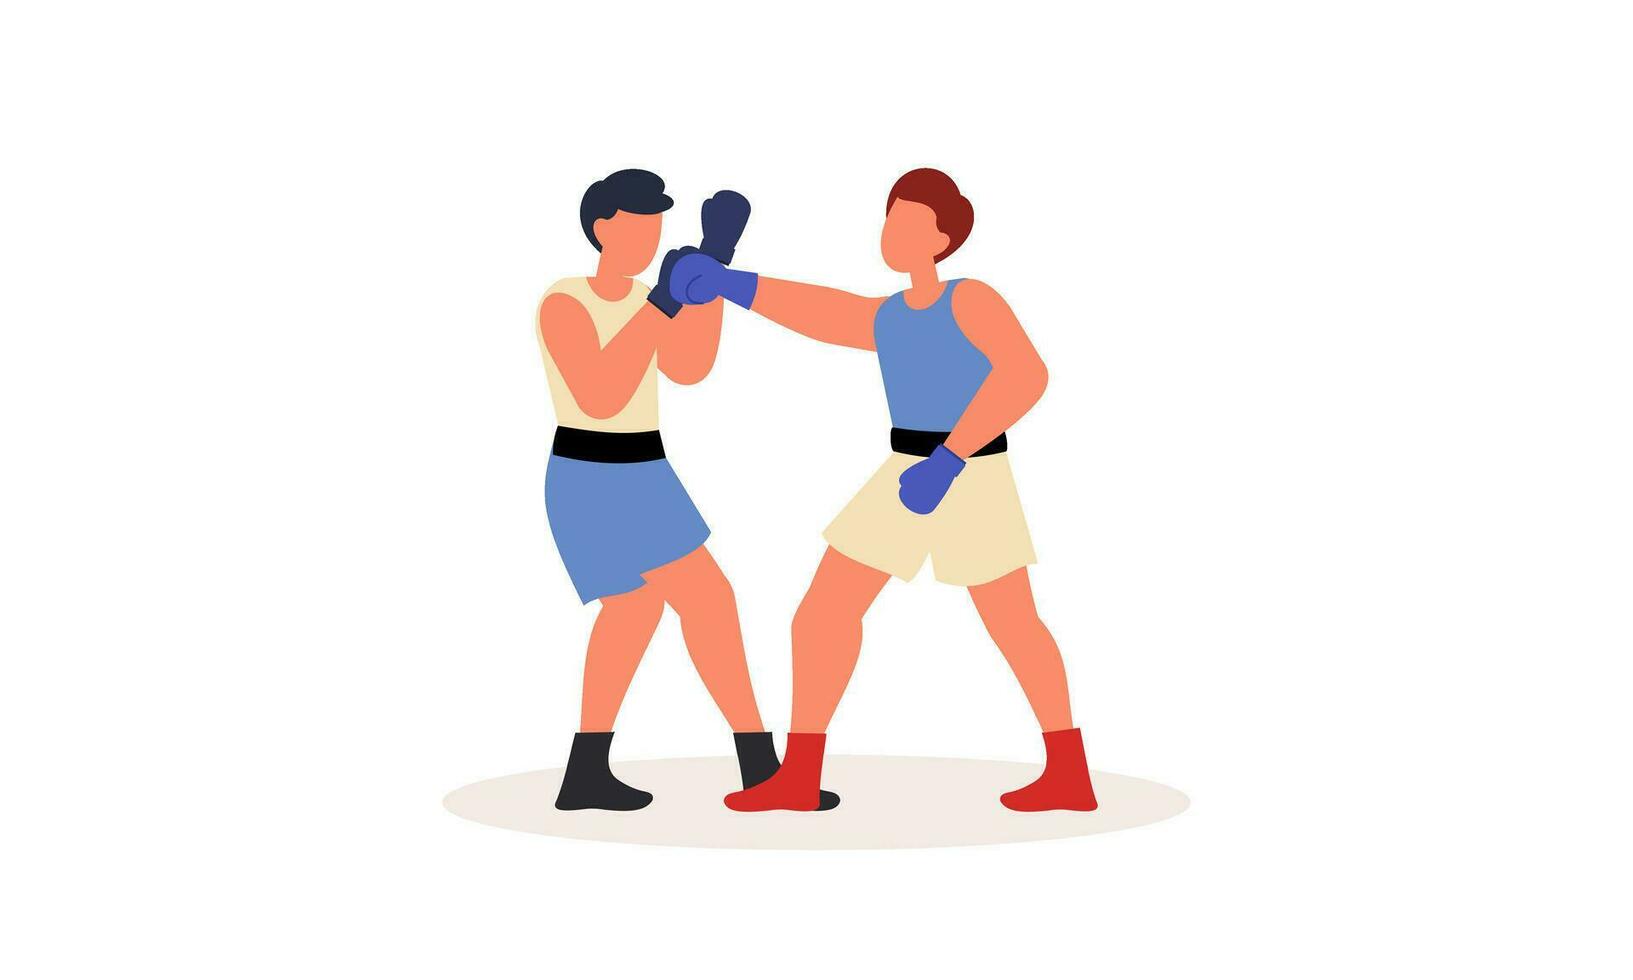 boksen sport illustratie concept vector